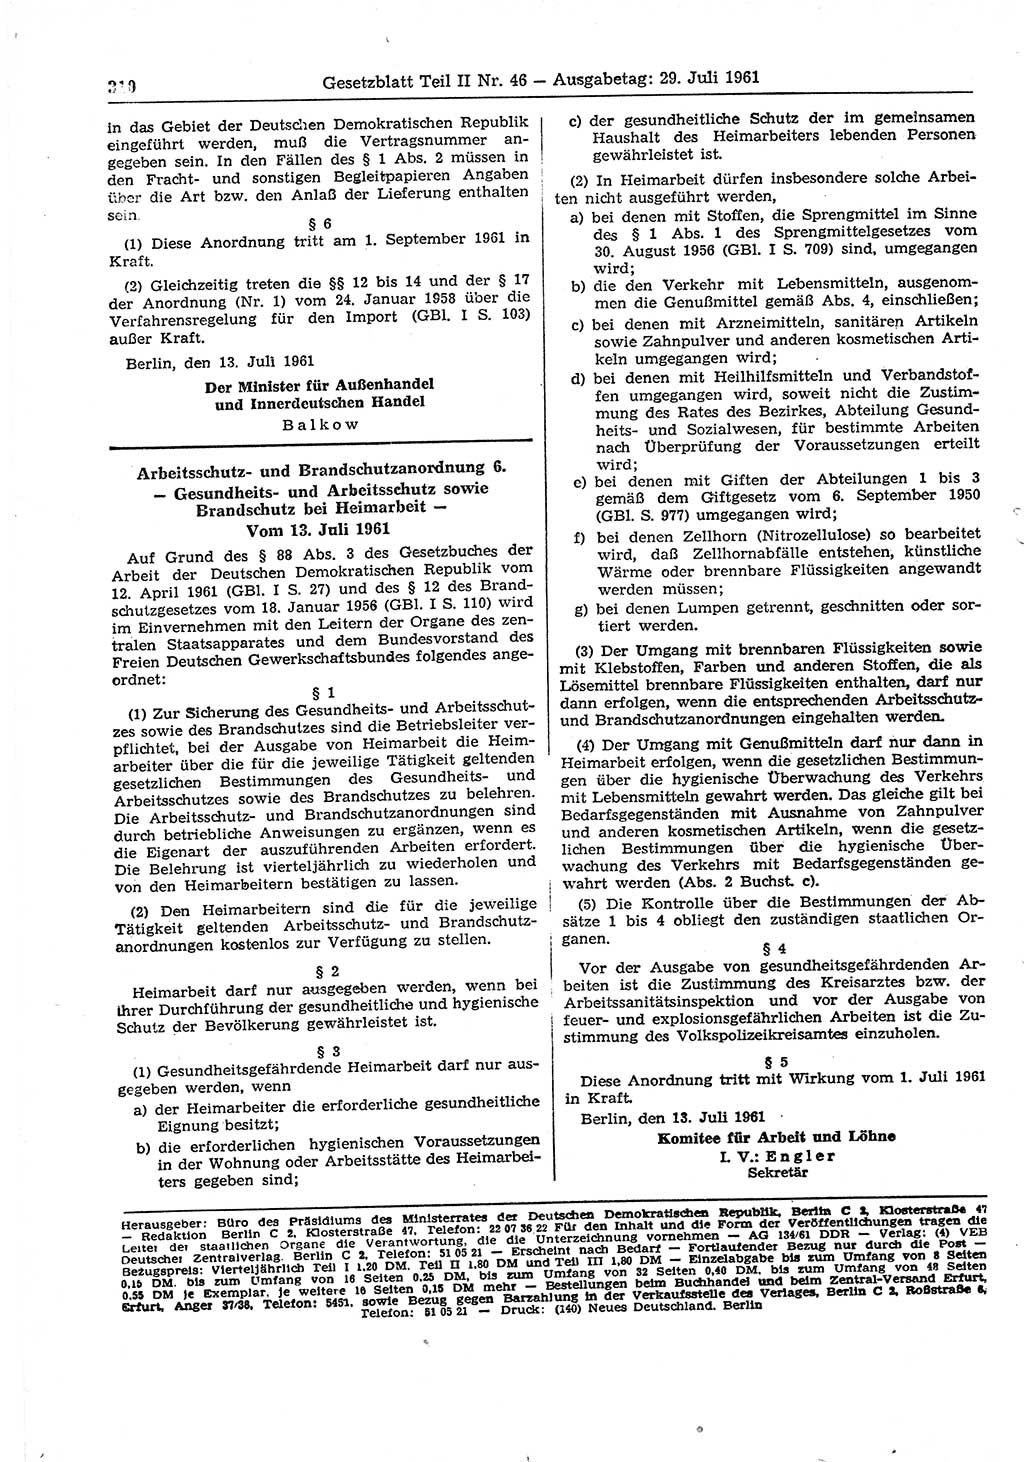 Gesetzblatt (GBl.) der Deutschen Demokratischen Republik (DDR) Teil ⅠⅠ 1961, Seite 310 (GBl. DDR ⅠⅠ 1961, S. 310)